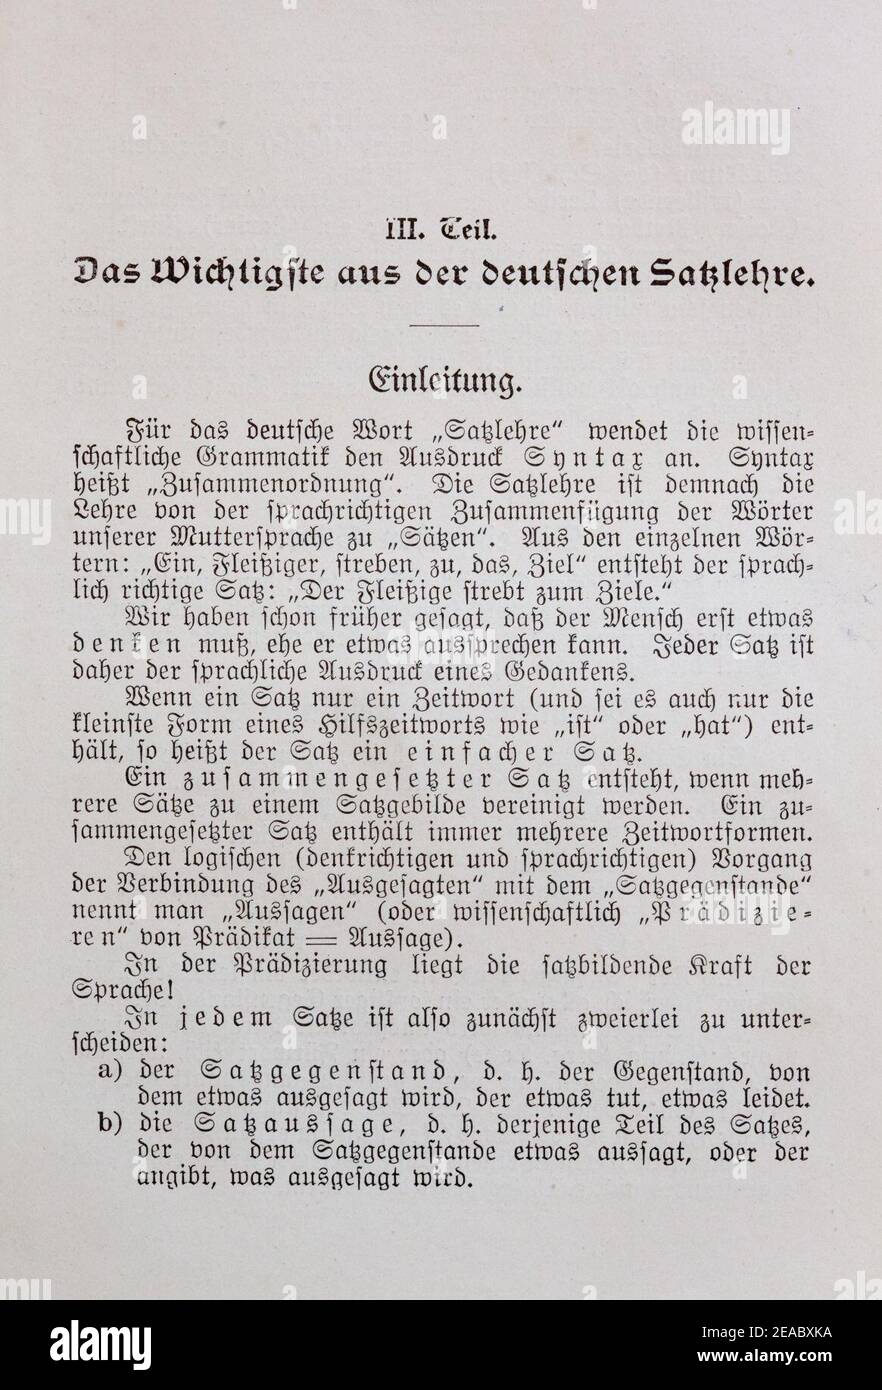 Neue Deutsche Sprachlehre 1911 von Theodor Paul - Seite 207. Stock Photo